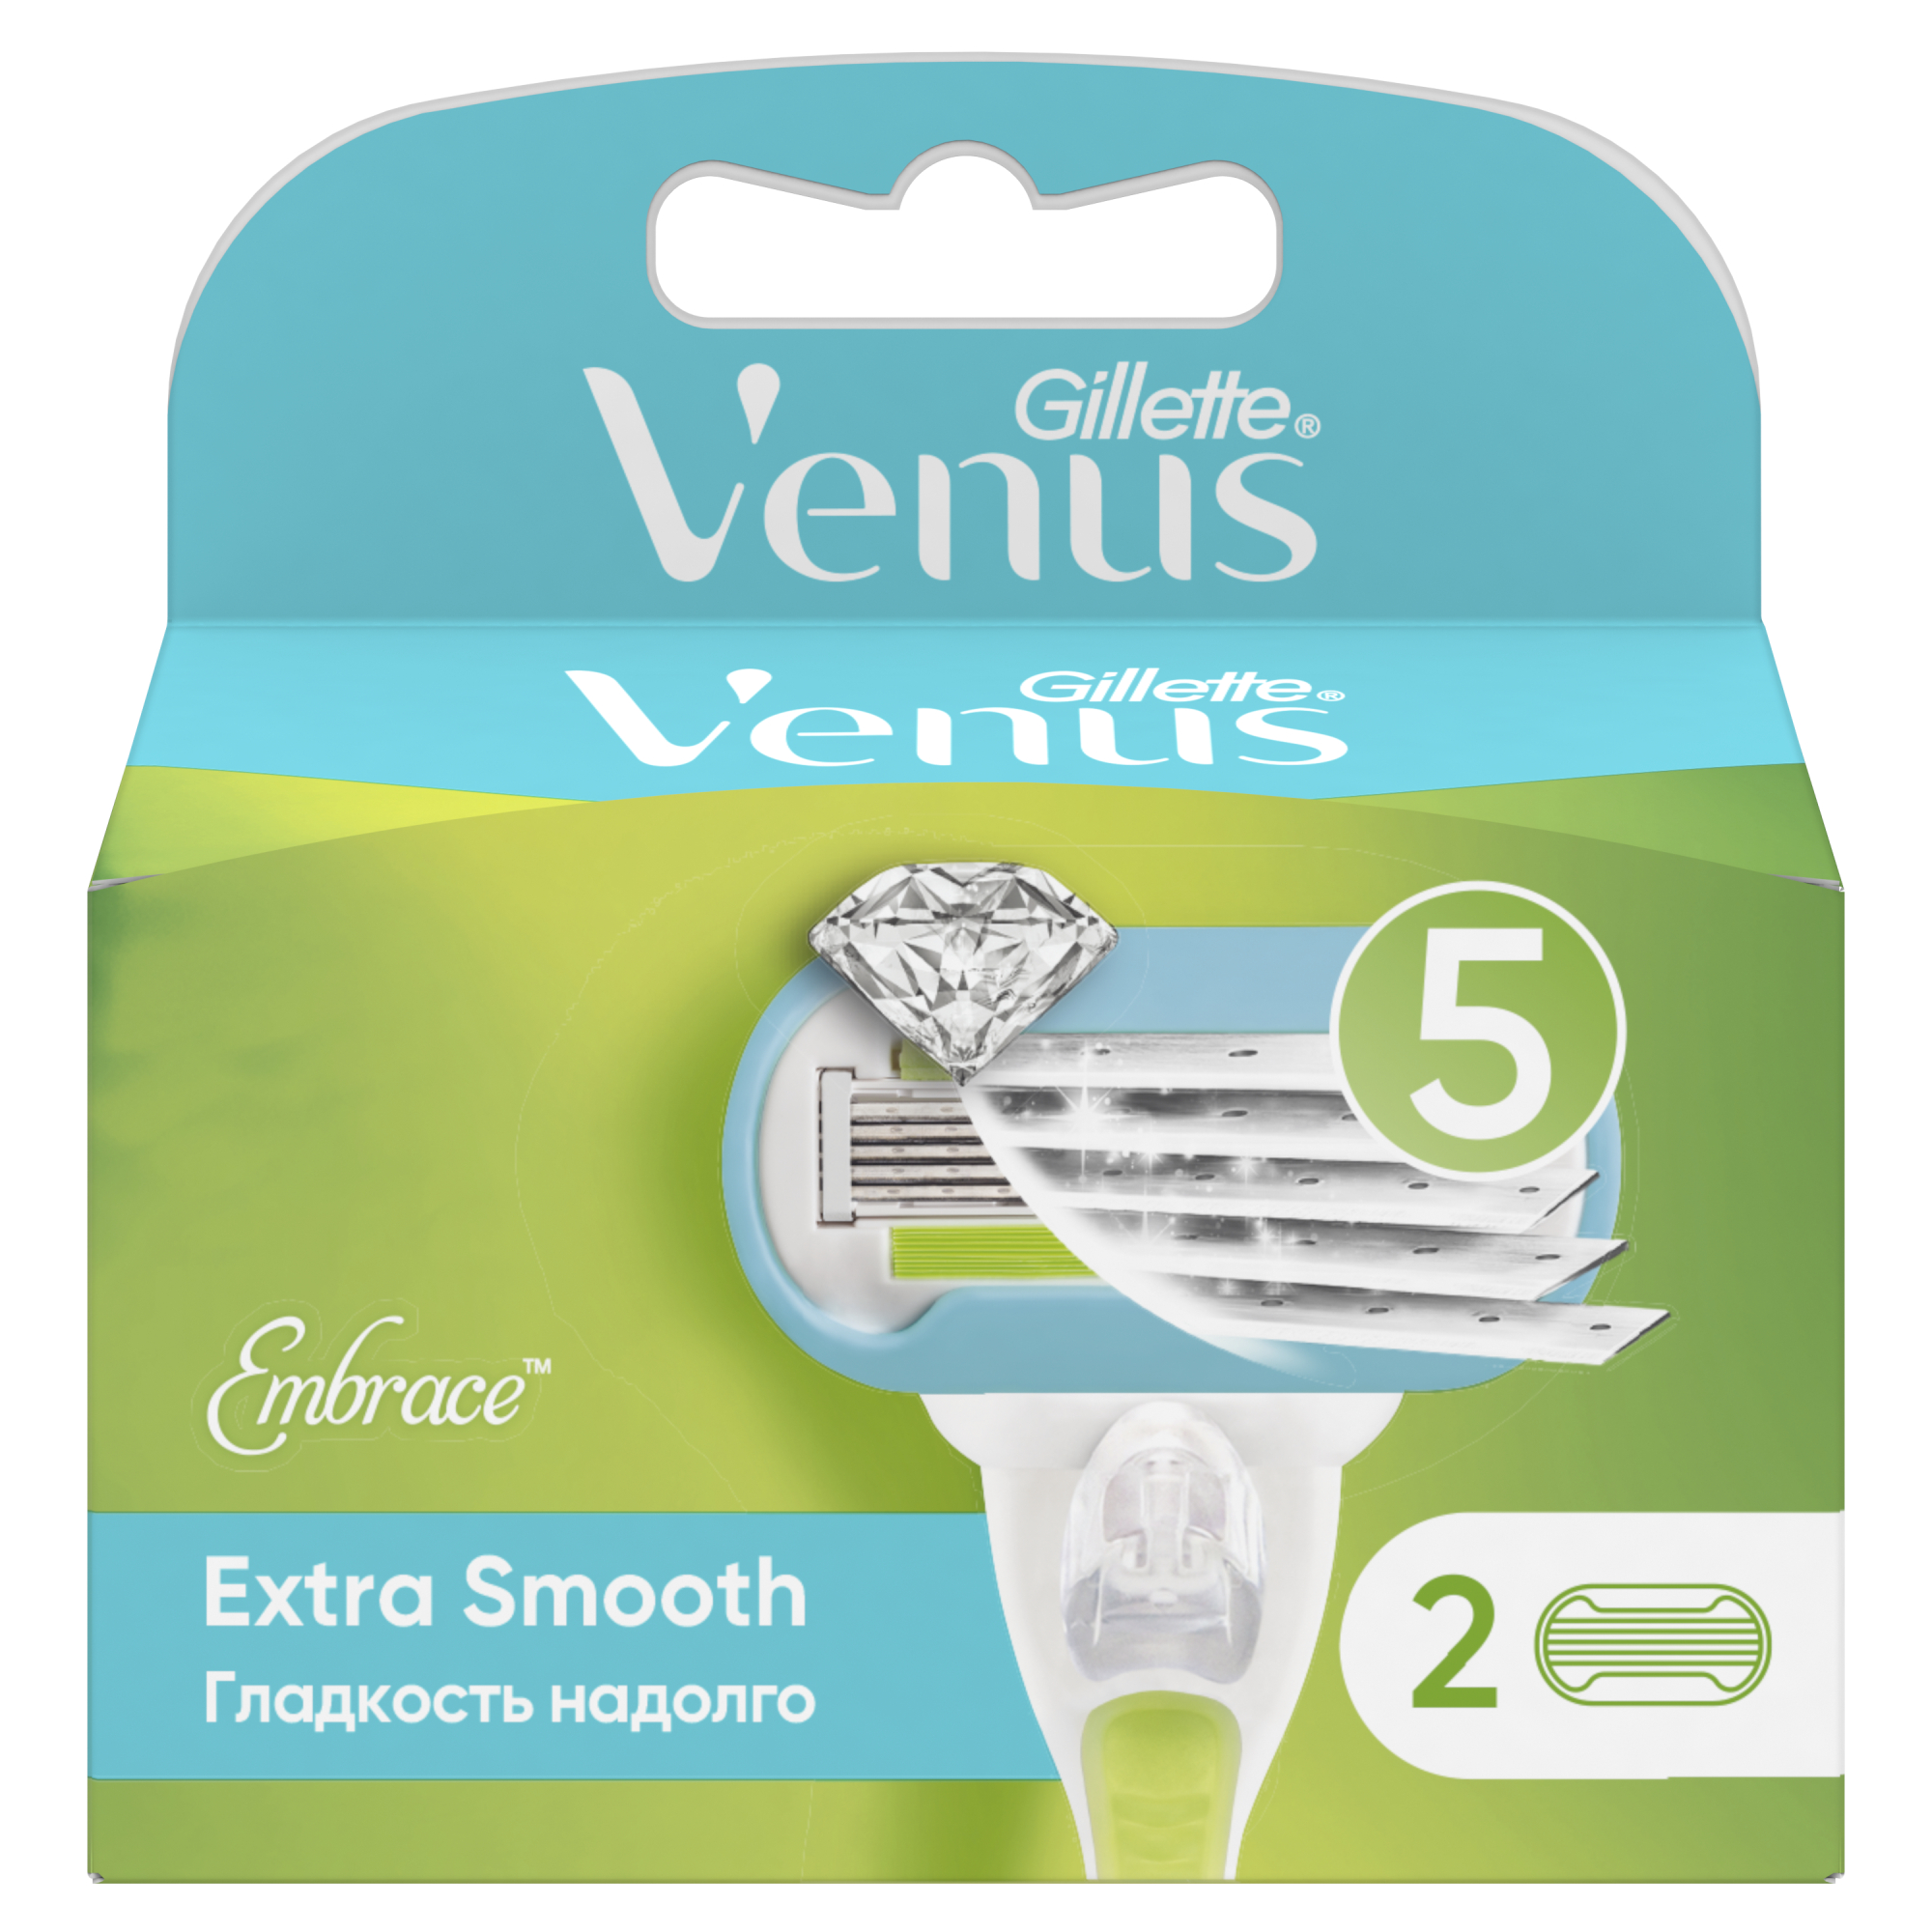 Сменные кассеты для женской бритвы Venus Extra Smooth, 5 лезвий, 2 шт невероятная гладкость надолго минипарник на 2 кассеты без кассет